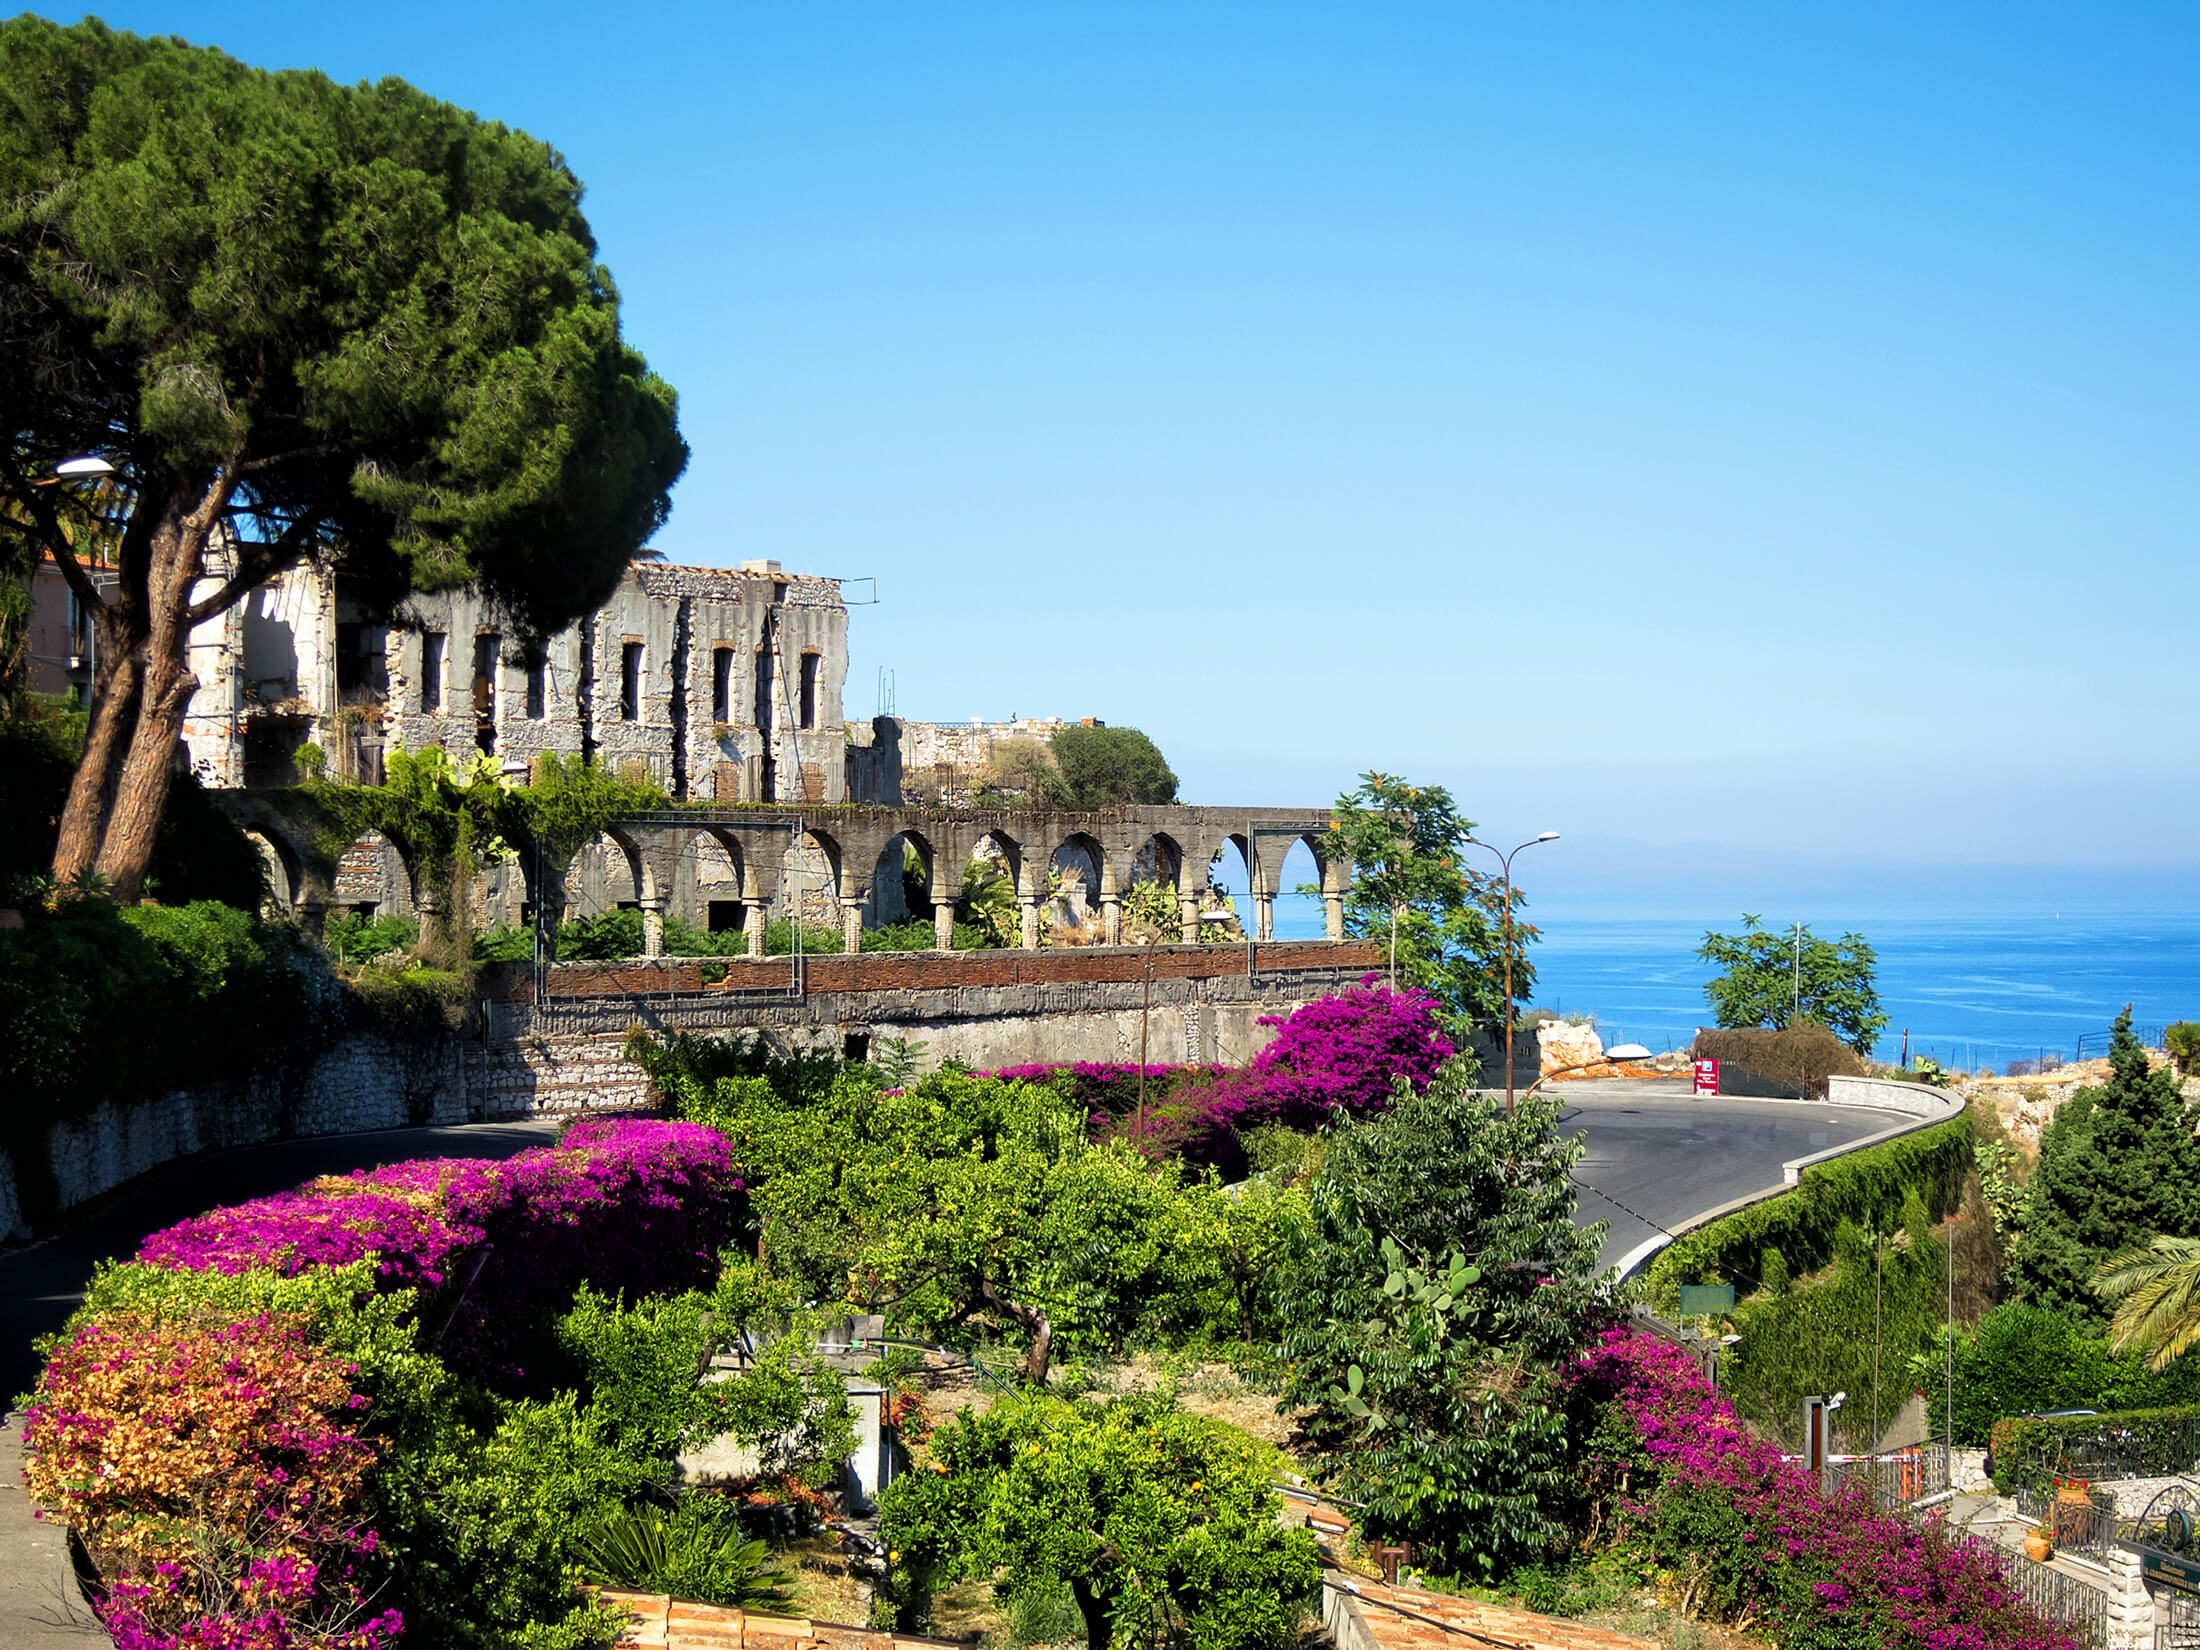 Farbenprächtiger Garten in der Nähe eines alten Gebäudes auf Sizilien, Italien